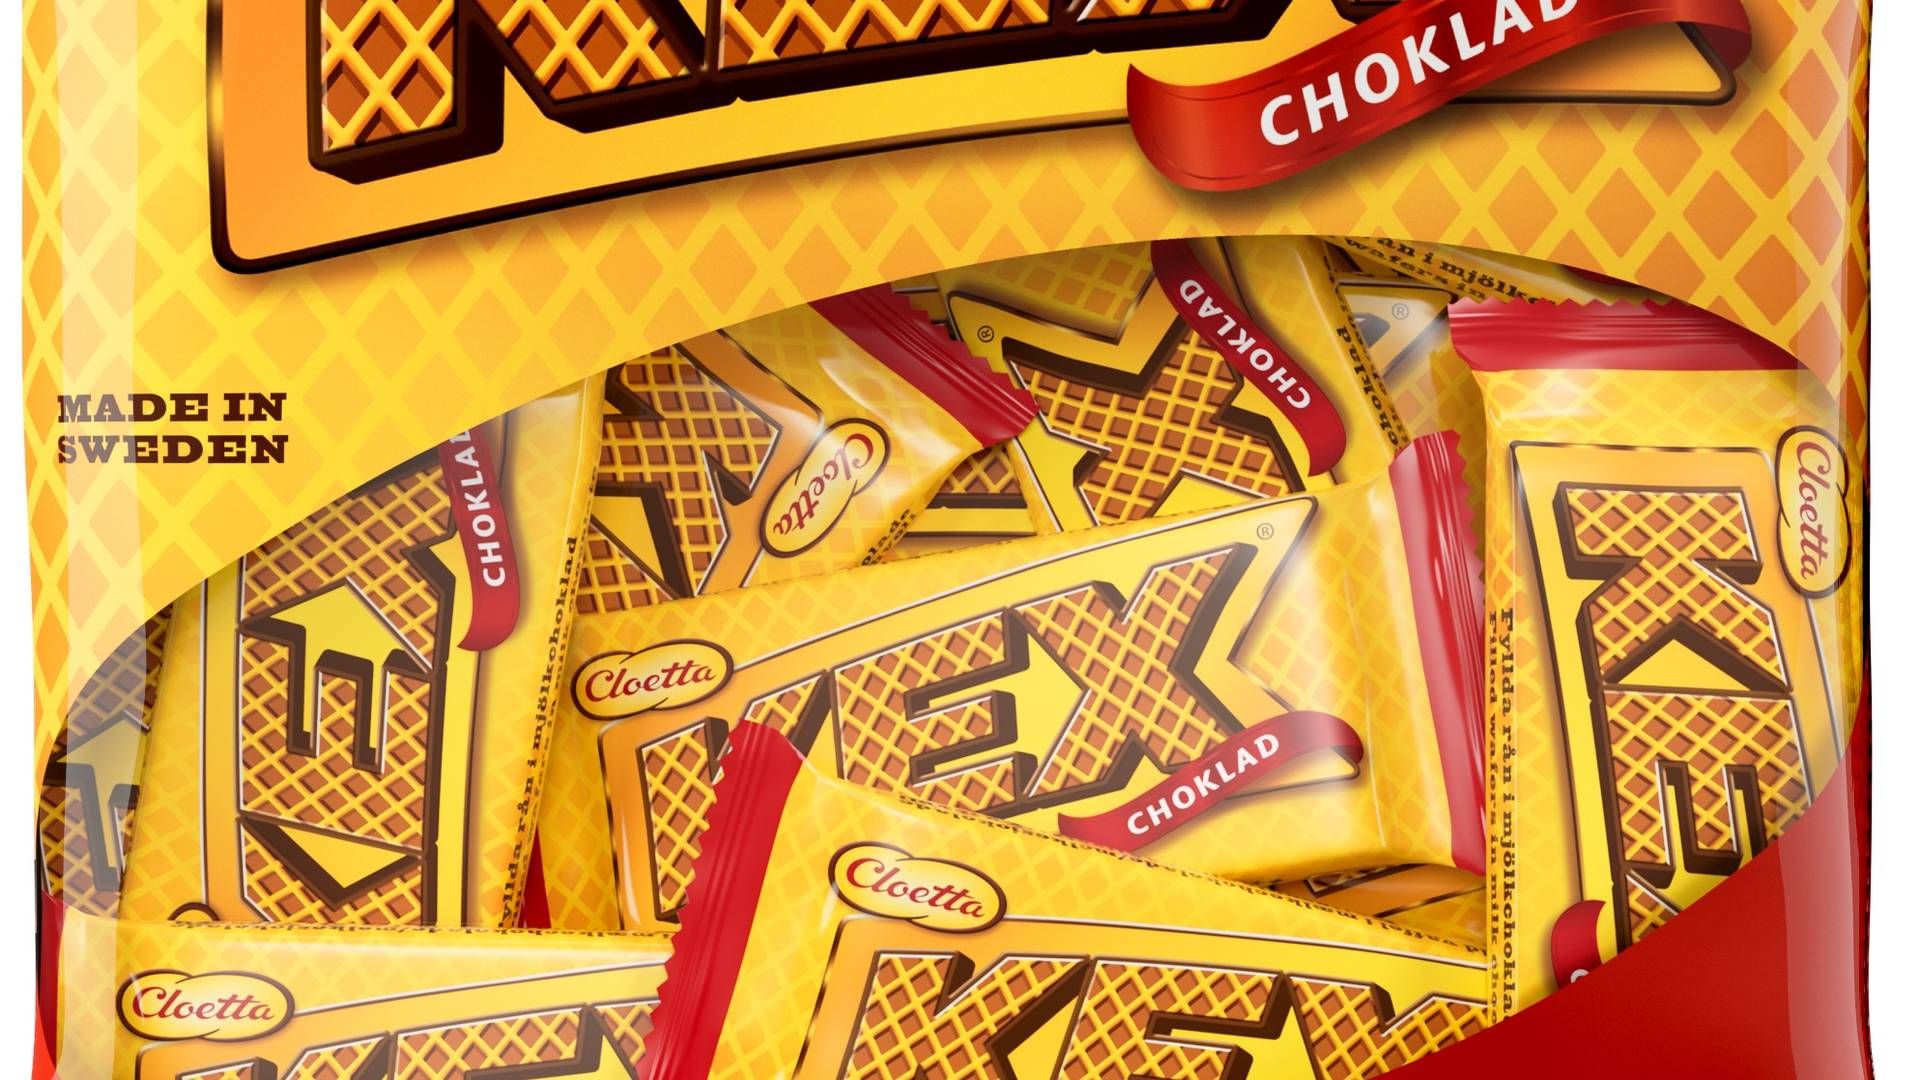 Svenske Cloetta producerer blandt andre produkter som Kex, Center og Polly med chokolade. | Foto: Pr/ Cloetta